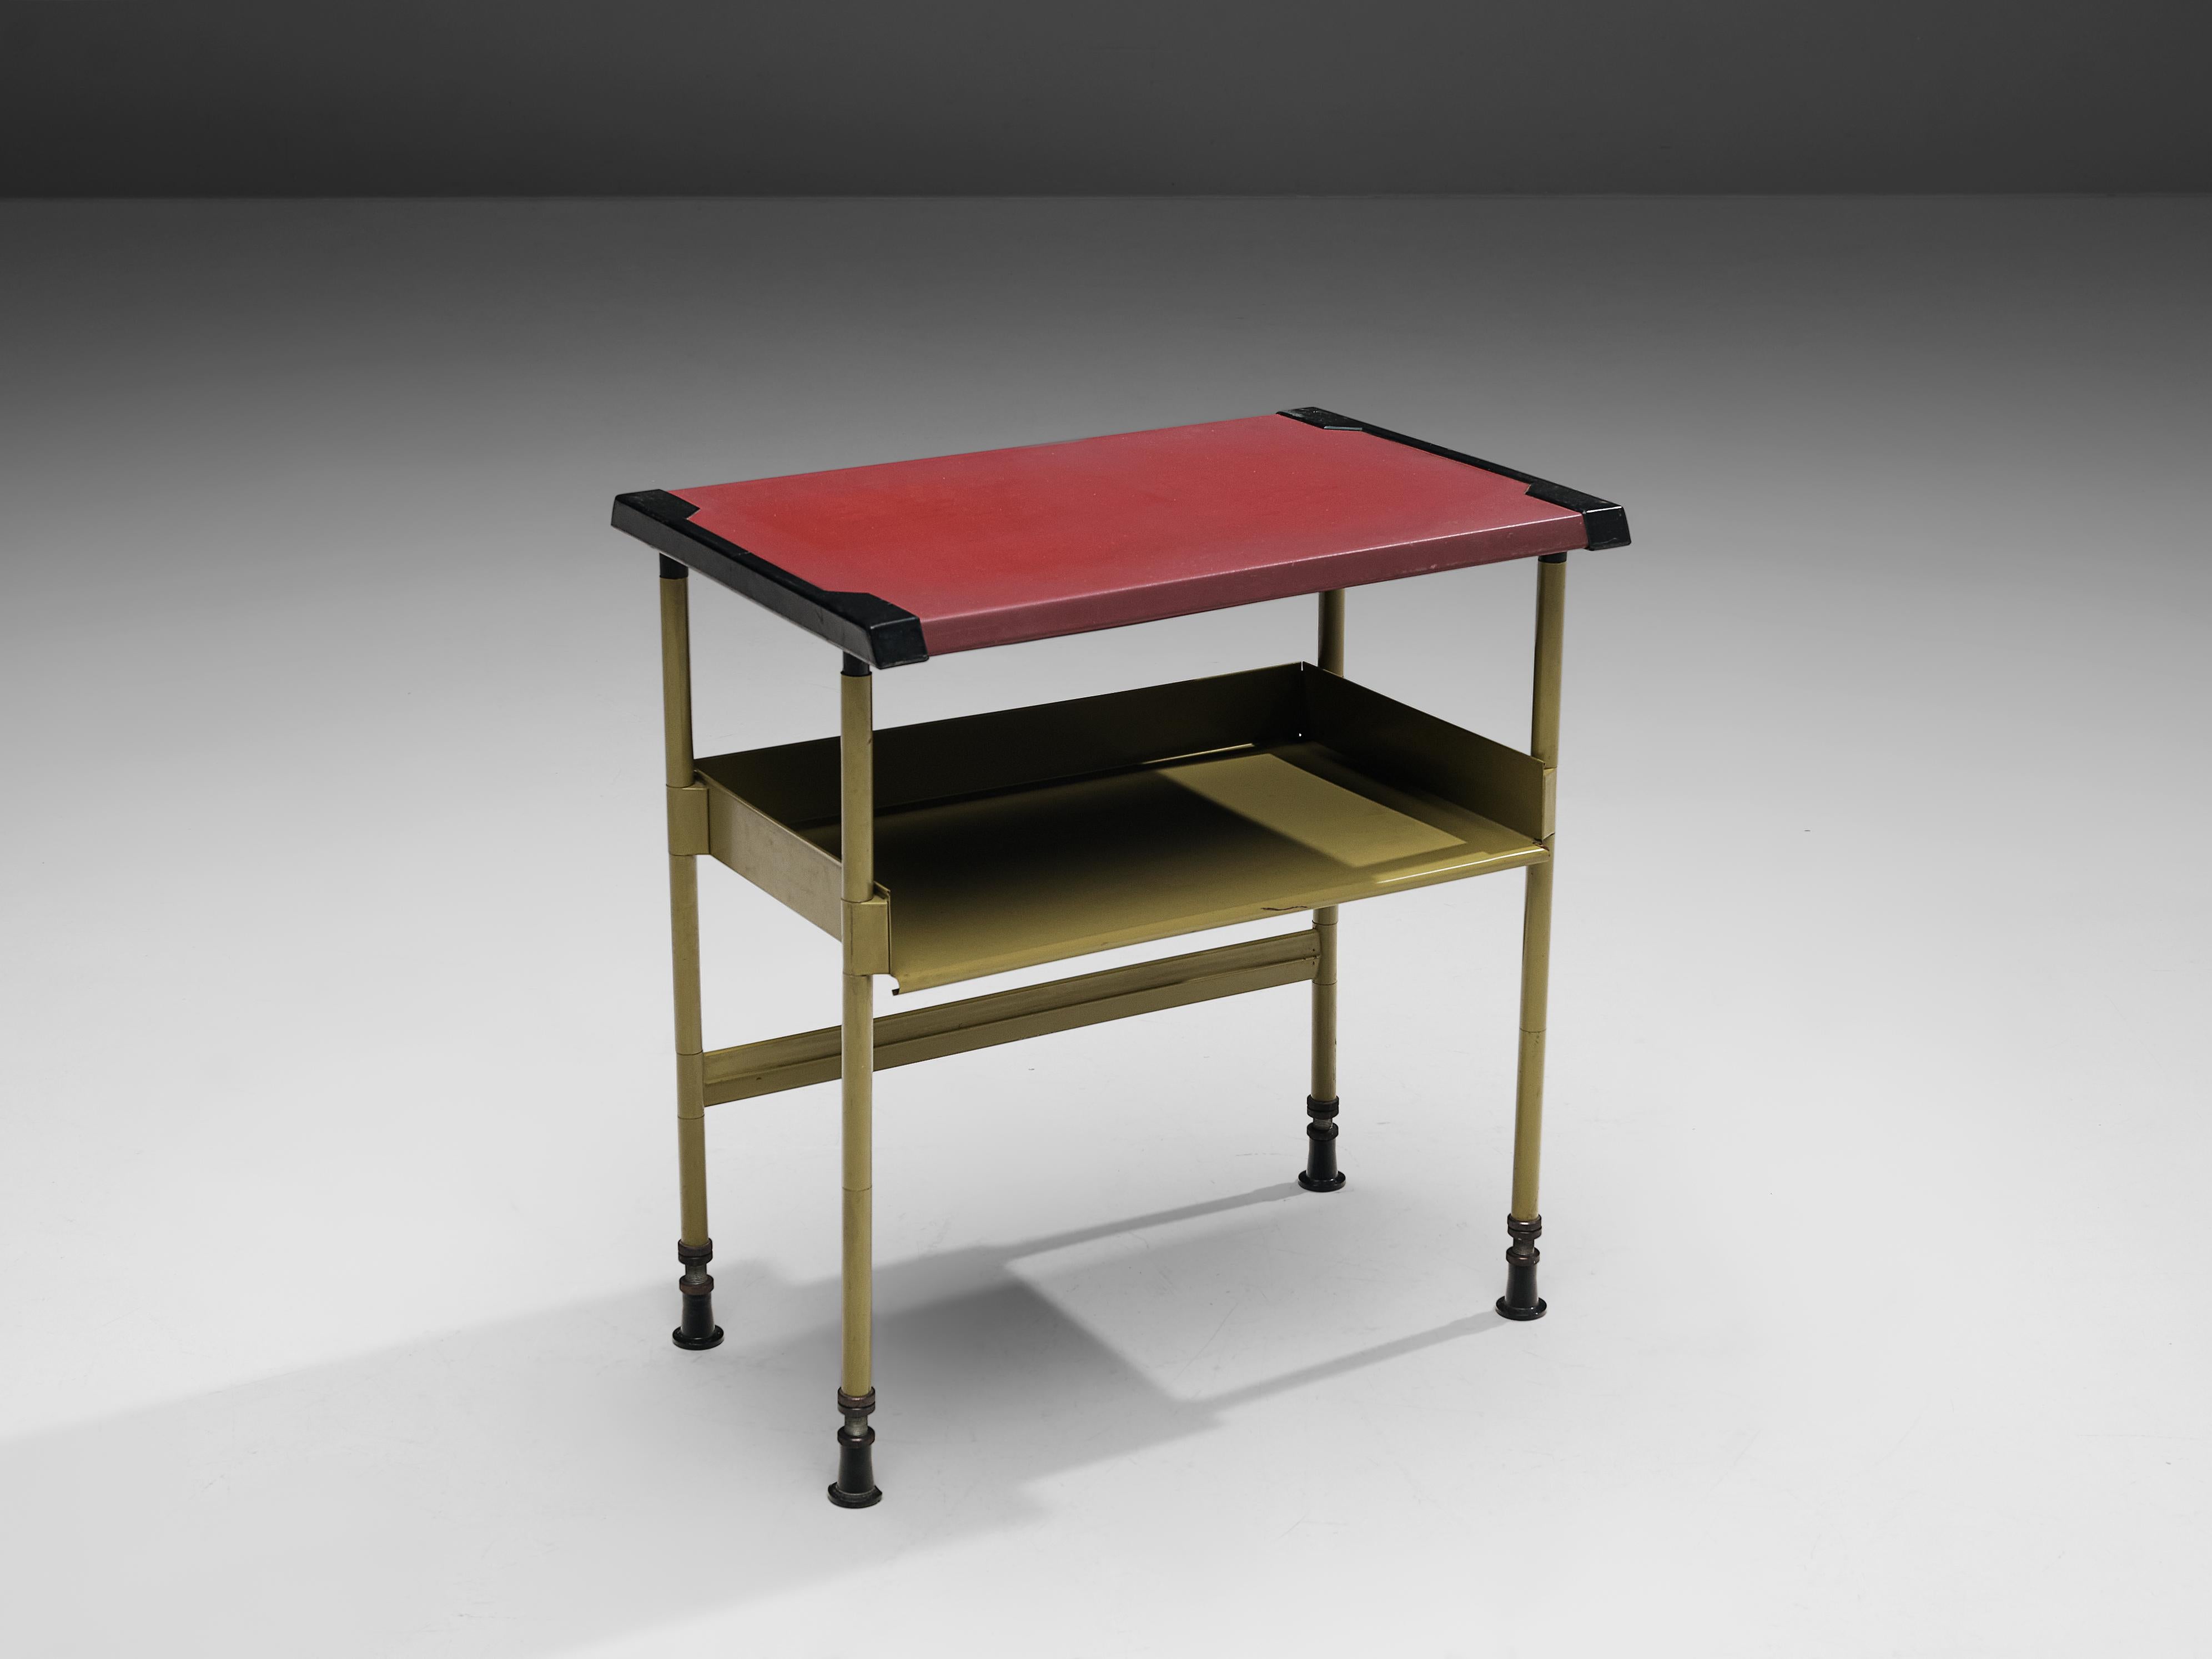 Studio BBPR for Olivetti, 'Spazio' side table, steel, vinyl, plastic, Italy, ca. 1960 

The 'Spazio' series was designed by Studio BBPR for Olivetti in 1960. It won the Compasso d'Oro Award in 1962. Today the desk of the 'Spazio' series is